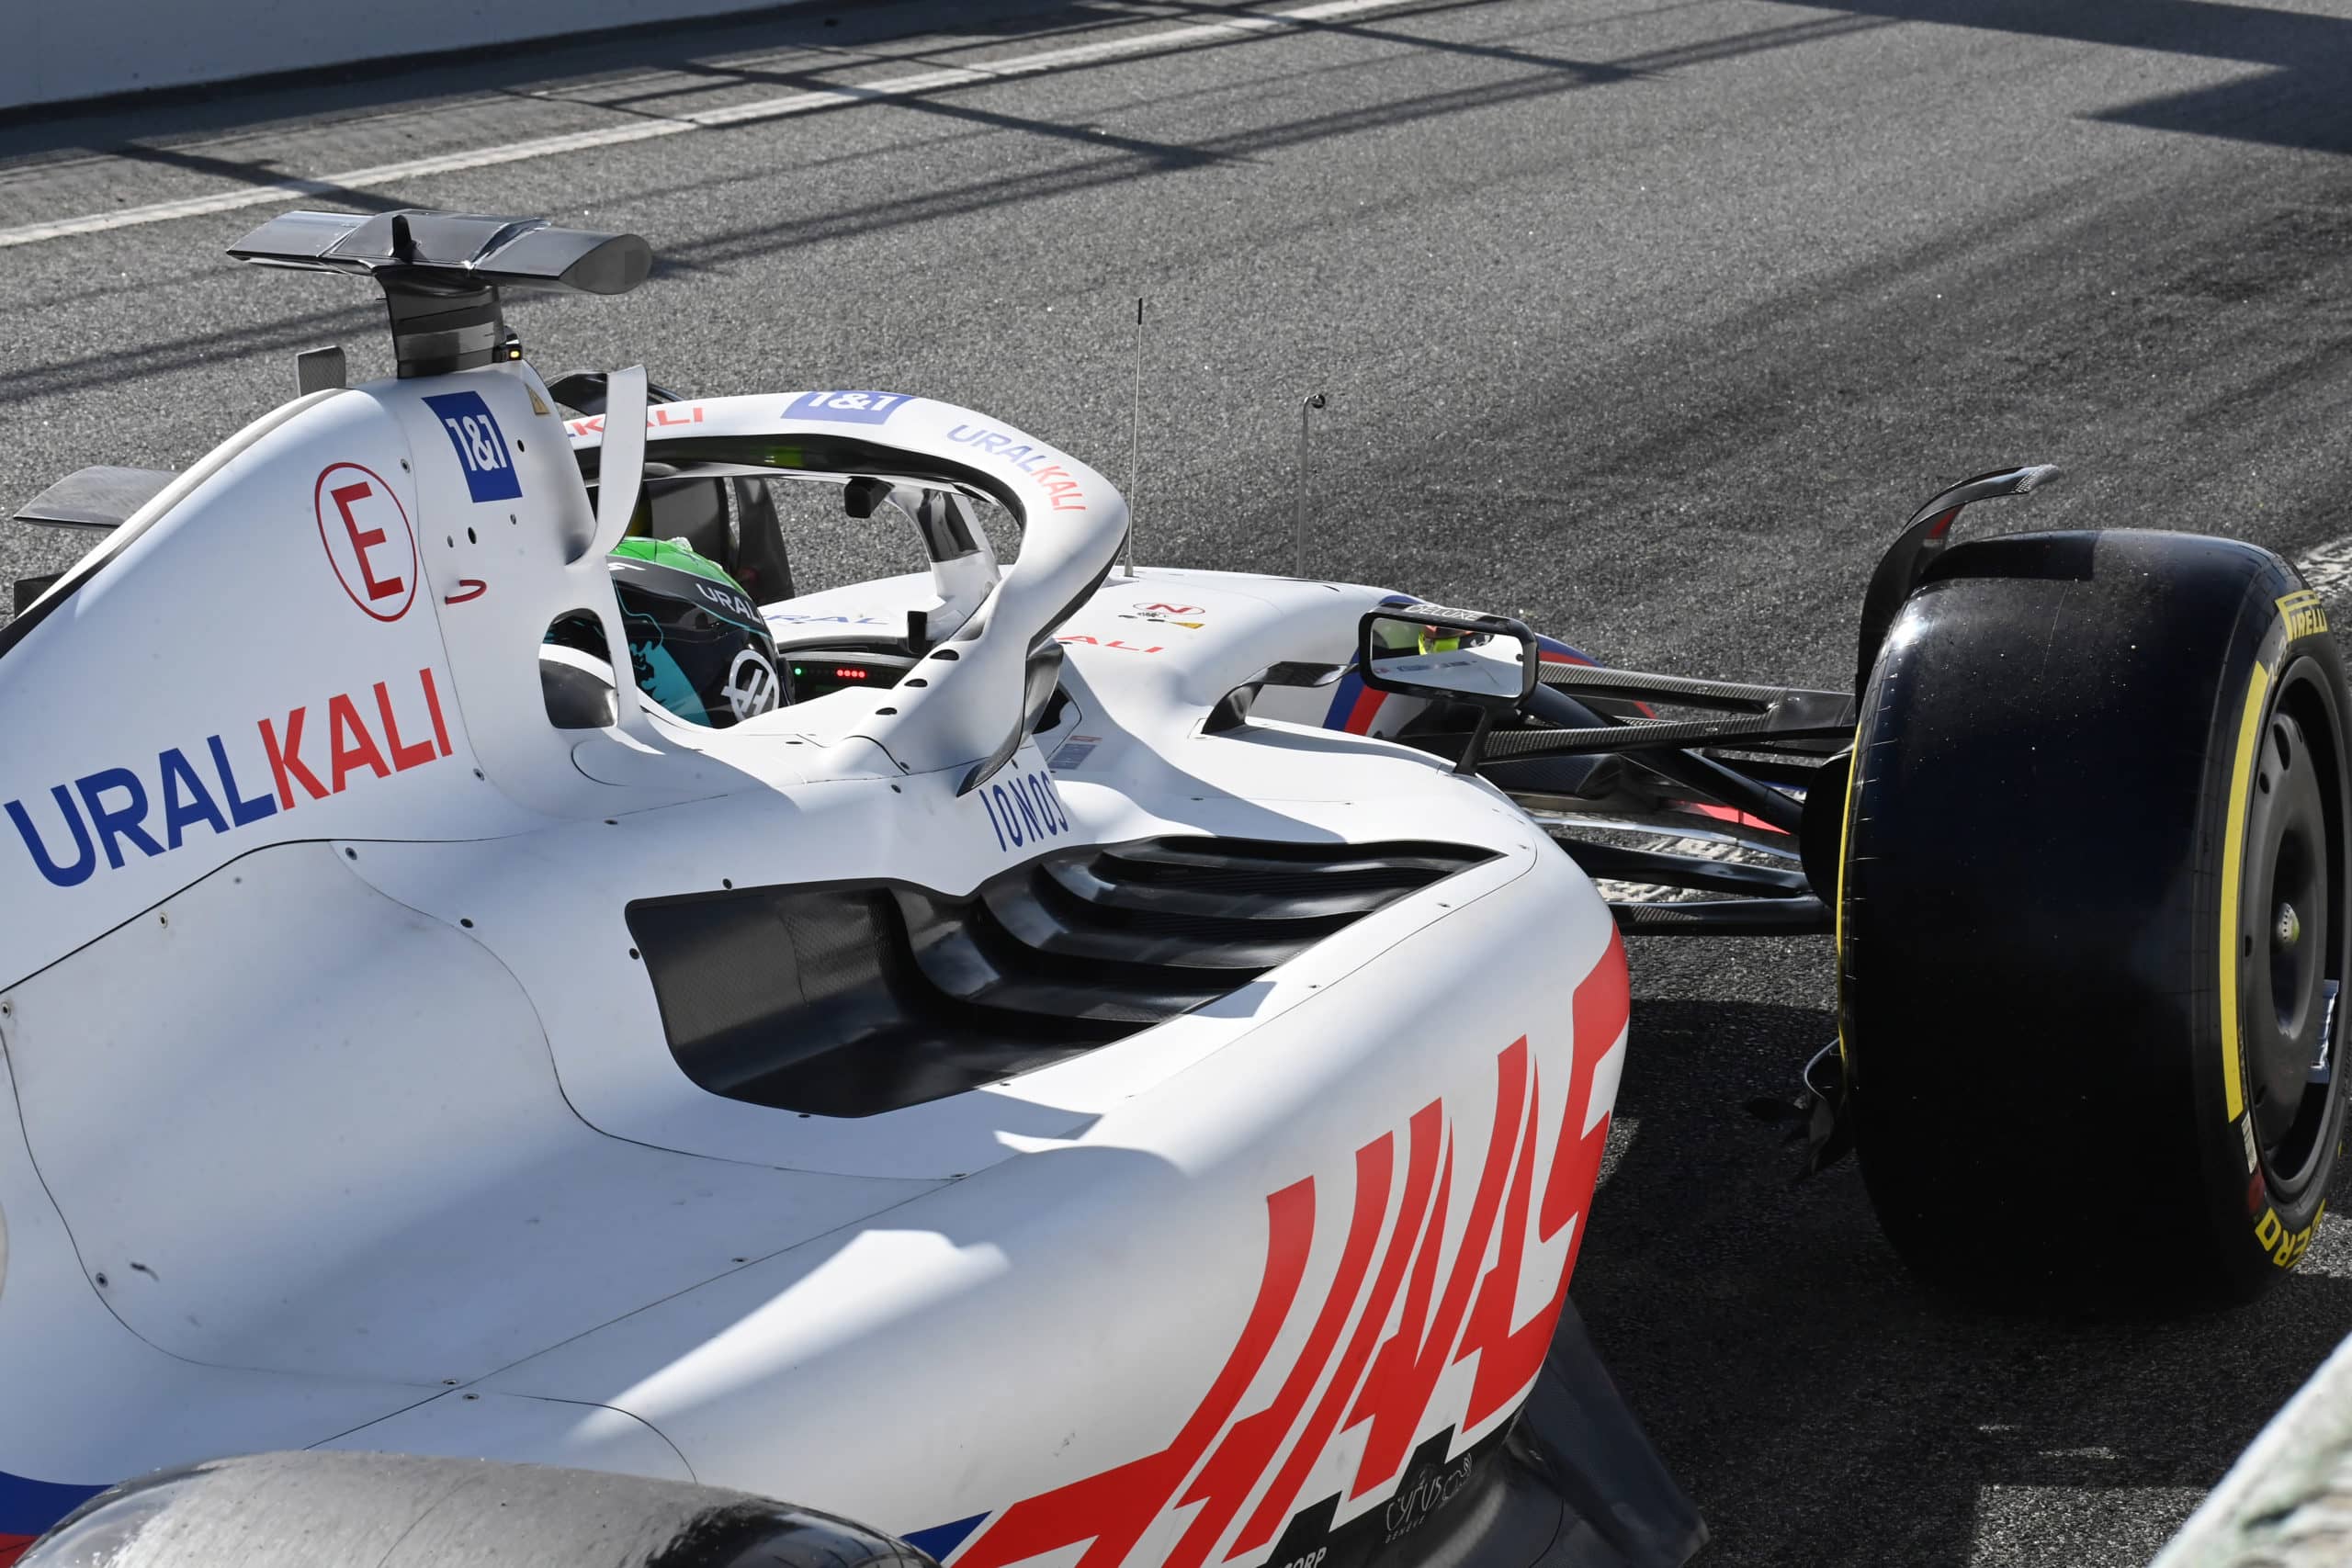 Haas F1